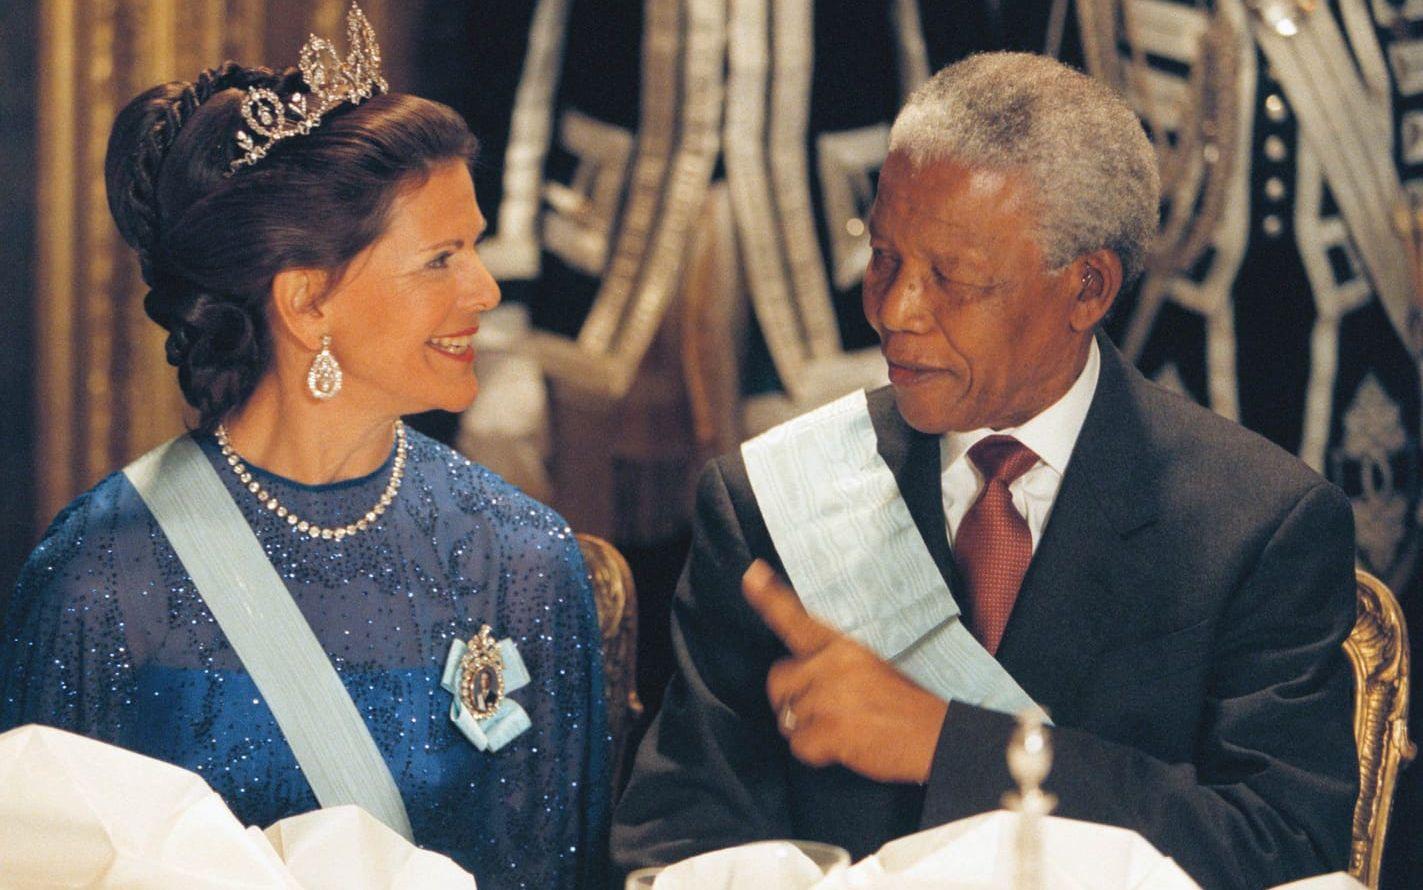 17 mars 1999: Drottning tillsammans med Nelson Mandela som gör ett officiellt besök i Sverige.